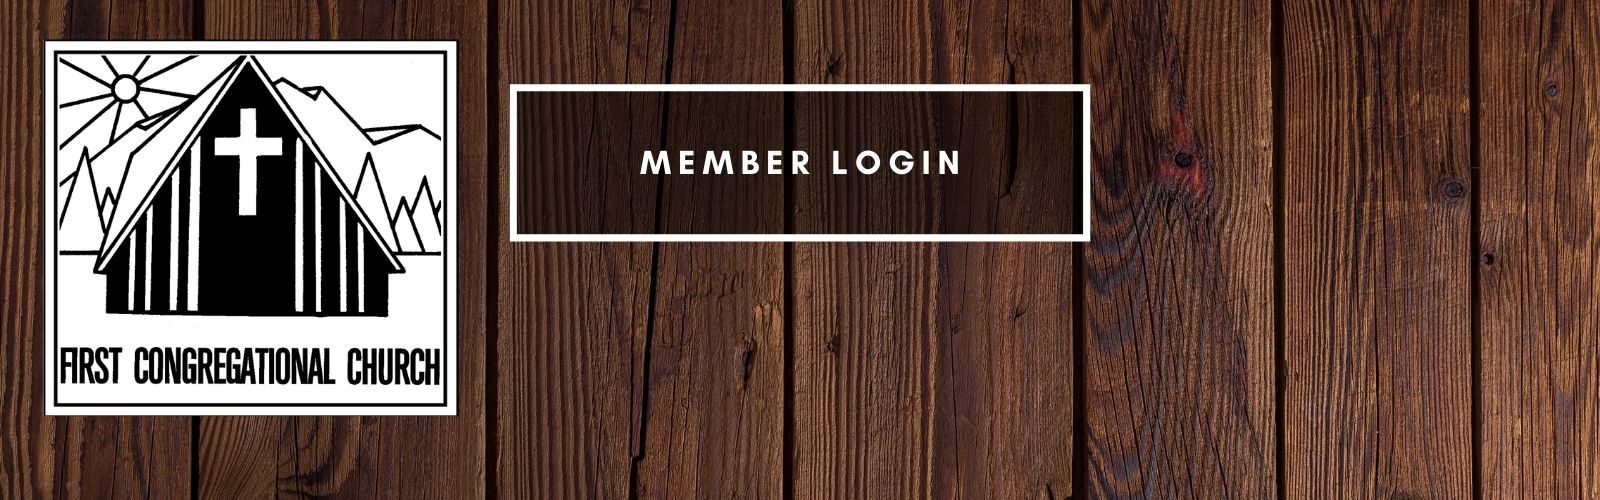 member log in